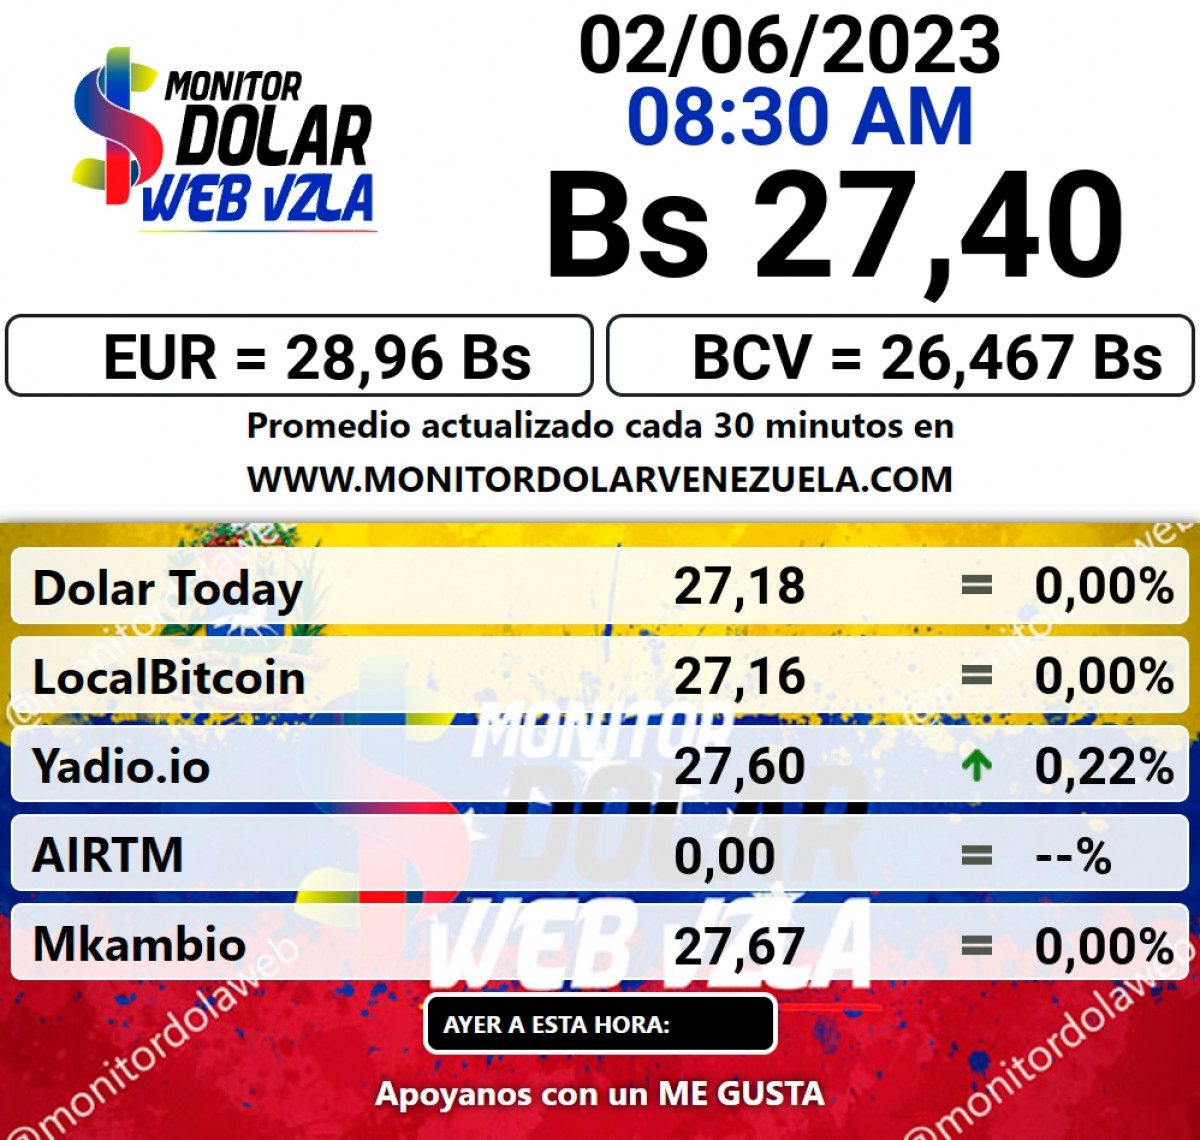 dolartoday en venezuela precio del dolar este viernes 2 de junio de 2023 laverdaddemonagas.com monitor2